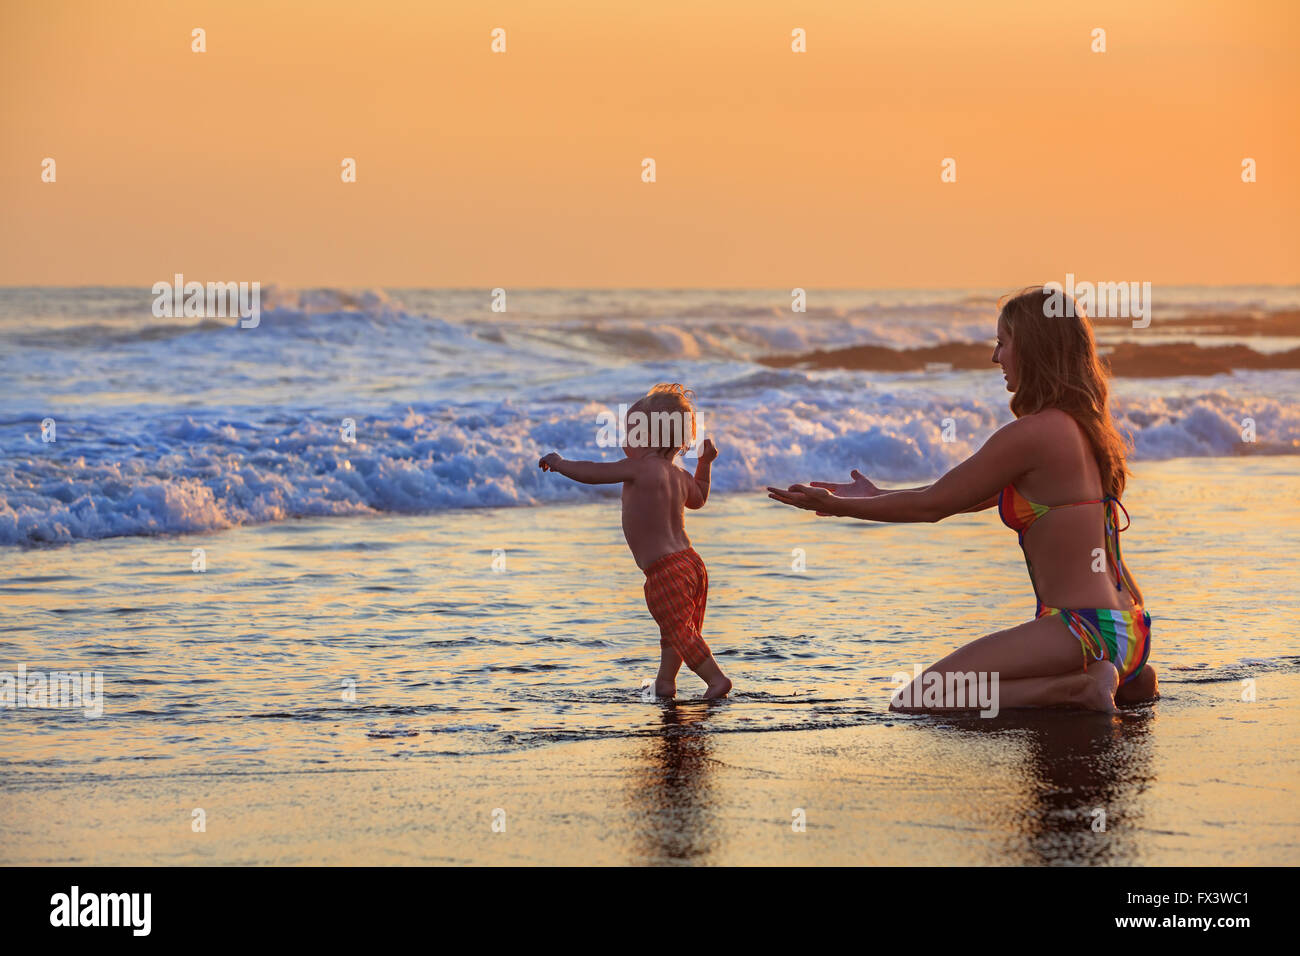 Natación diversión familiar en la playa surf feliz madre, hijo Primer paso - niño correr a las olas del océano en sunset sky de fondo. Foto de stock